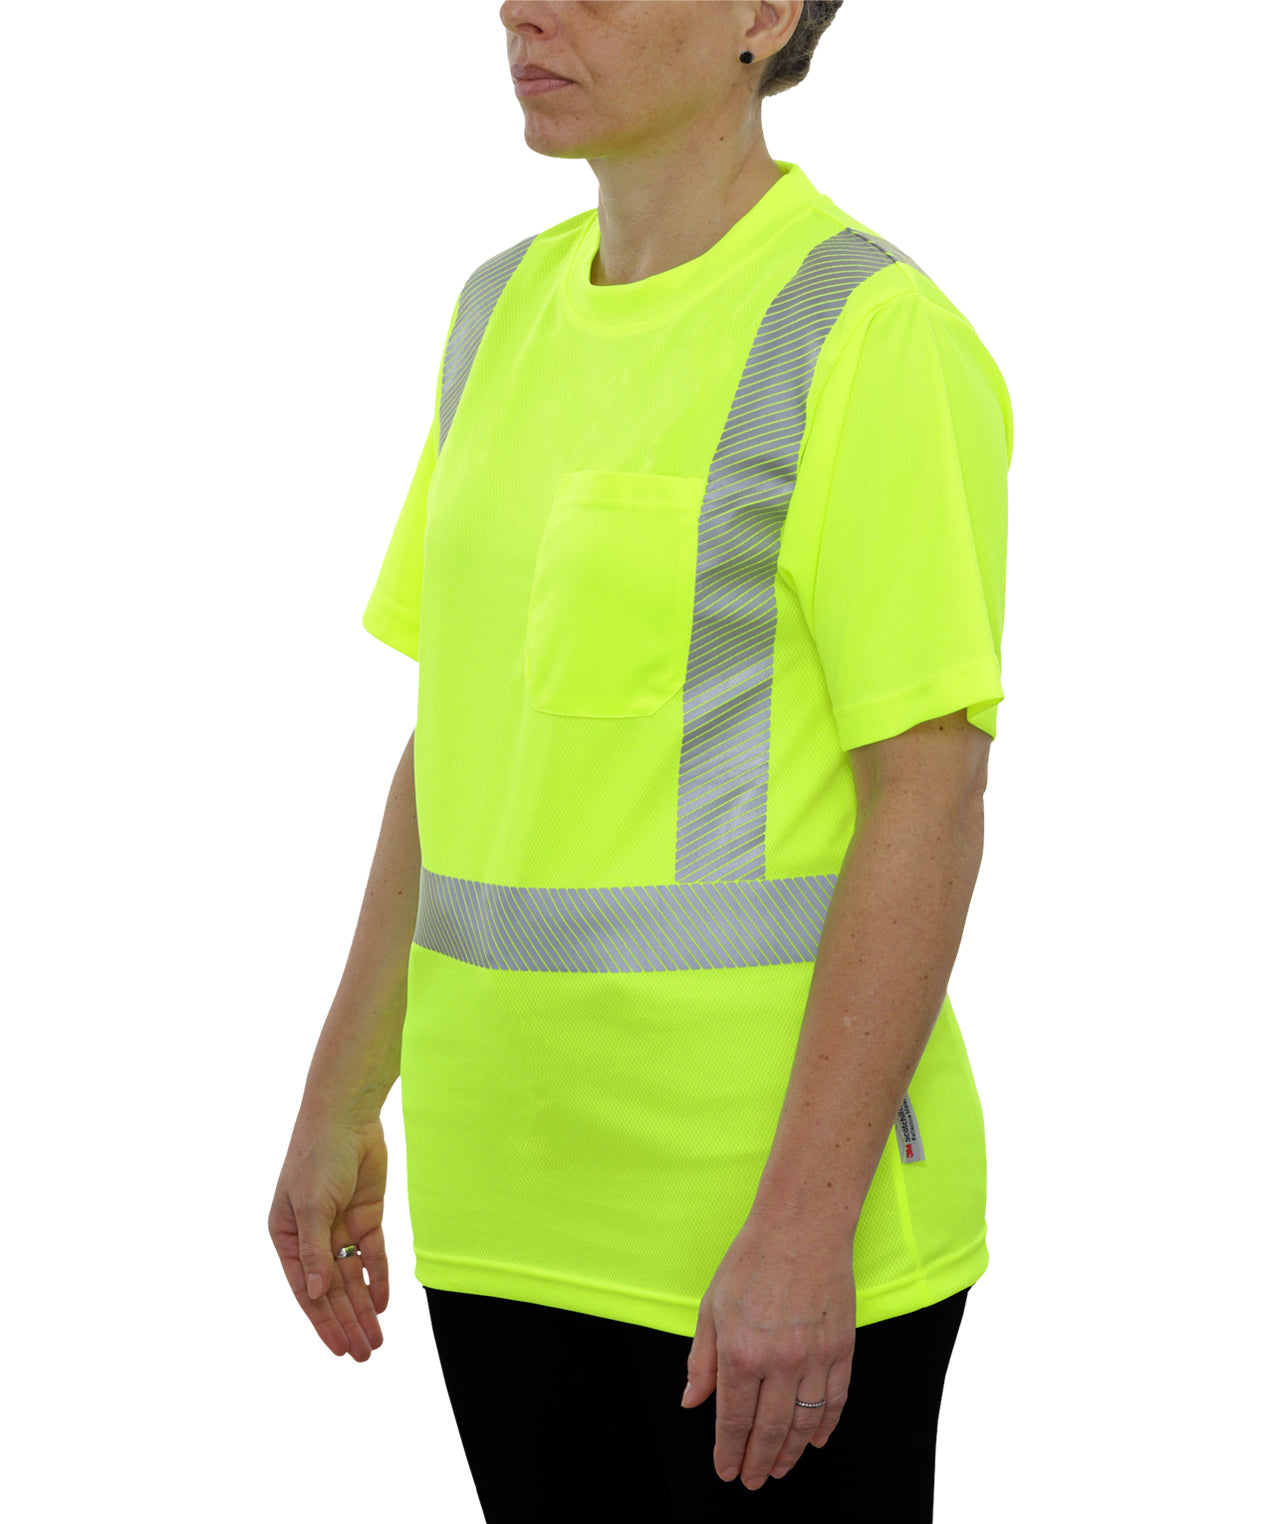 102CTLM Hi-Vis Lime Birdseye Pocket Safety Shirt with Comfort Trim by 3MTM